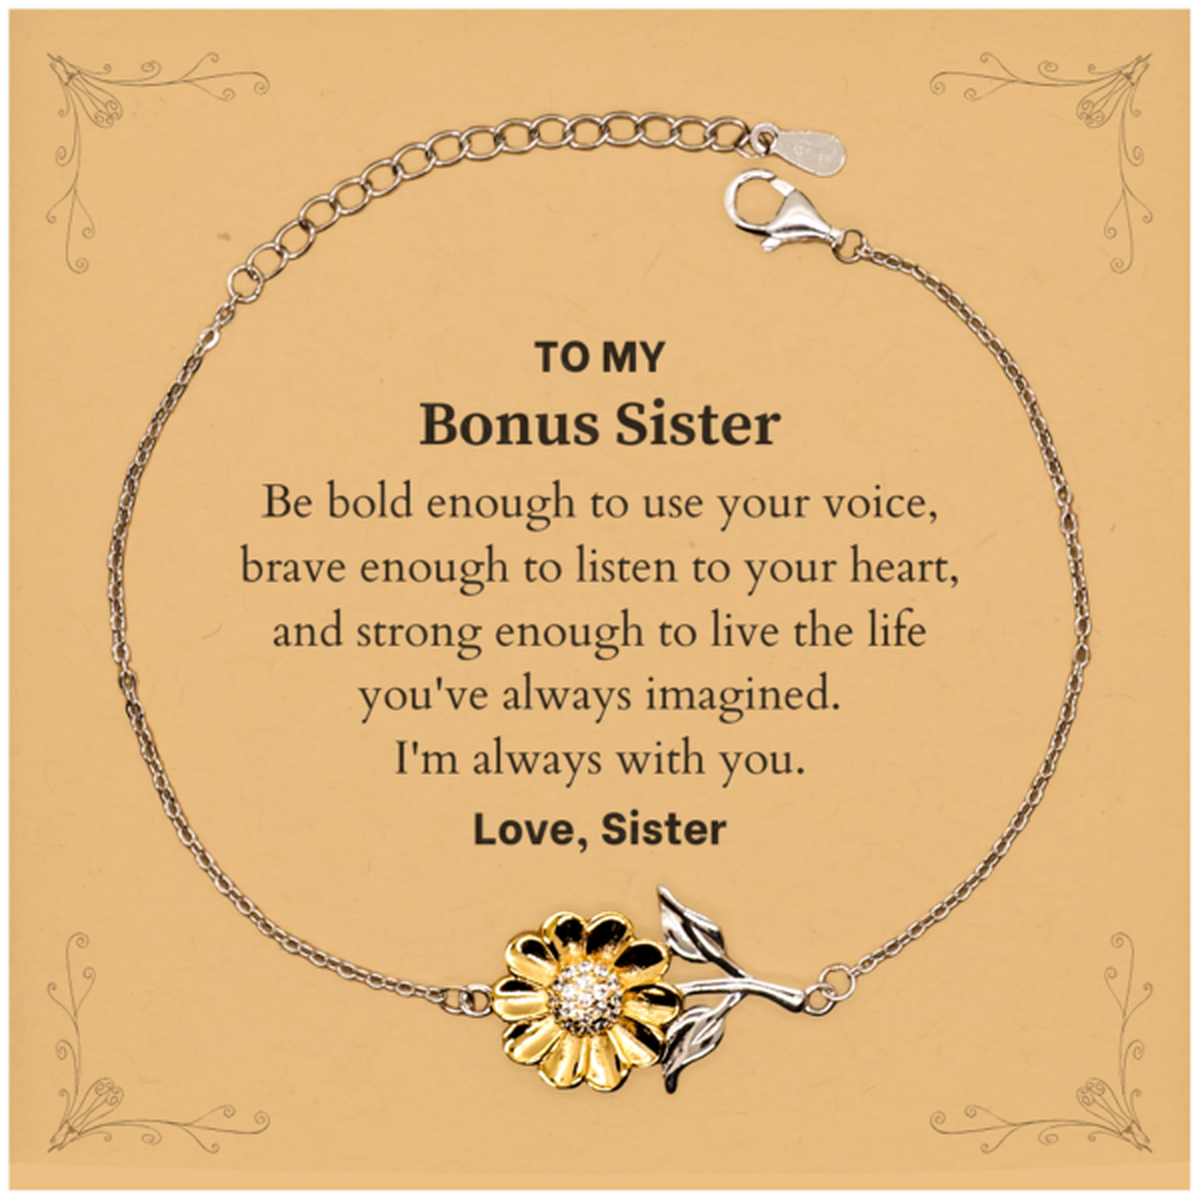 Keepsake Bonus Sister Sunflower Bracelet Gift Idea Graduation Christmas Birthday Bonus Sister from Sister, Bonus Sister Be bold enough to use your voice, brave enough to listen to your heart. Love, Sister